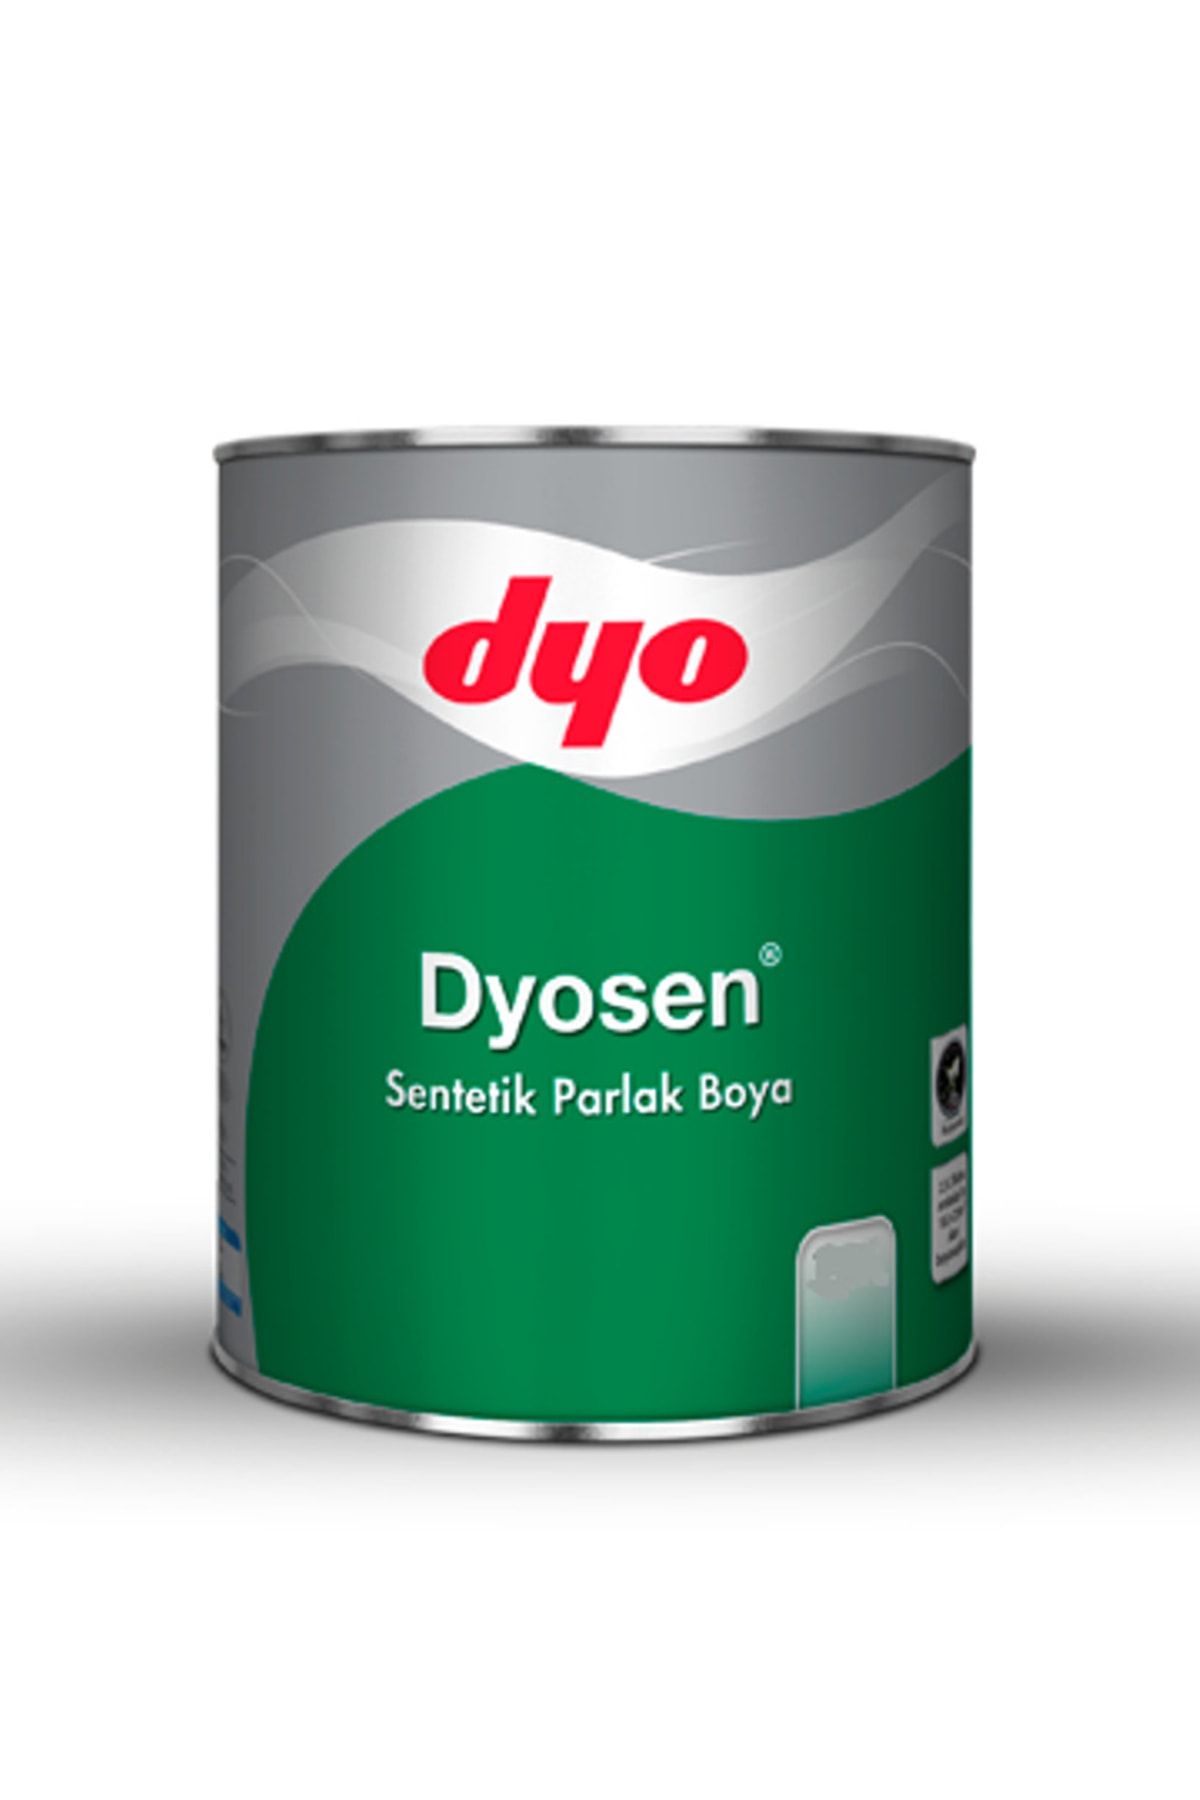 Dyo Dyosen Sentetik Parlak Boya 2,5 litre (Mor)